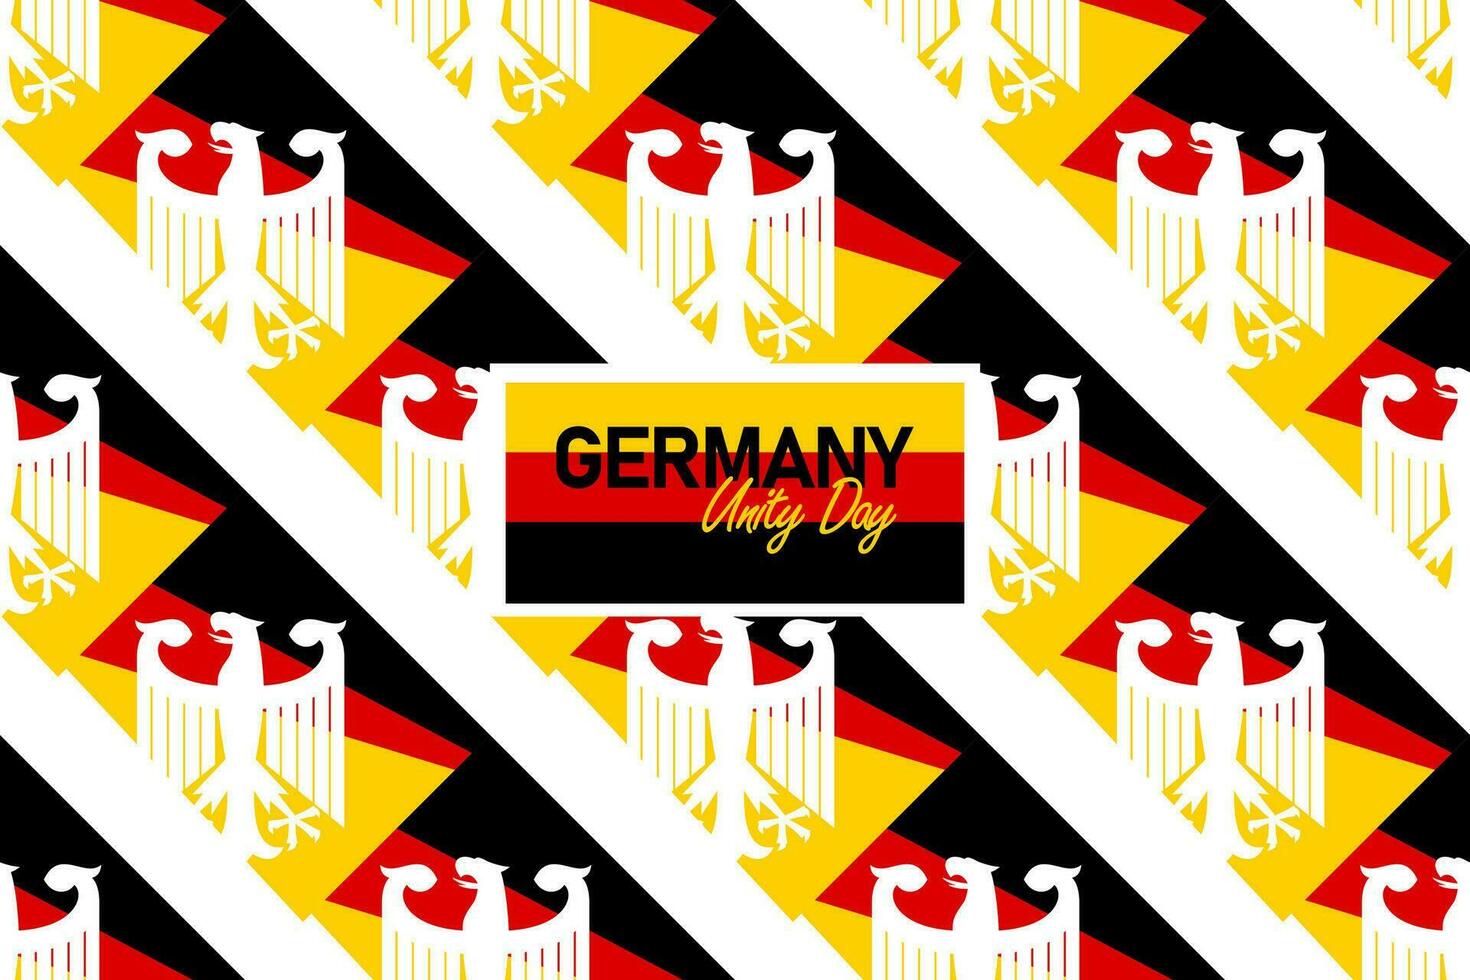 German independence day german unity day german republic day tag der deutschen einheit. deutschland language banner design German independence day germany unity days vector